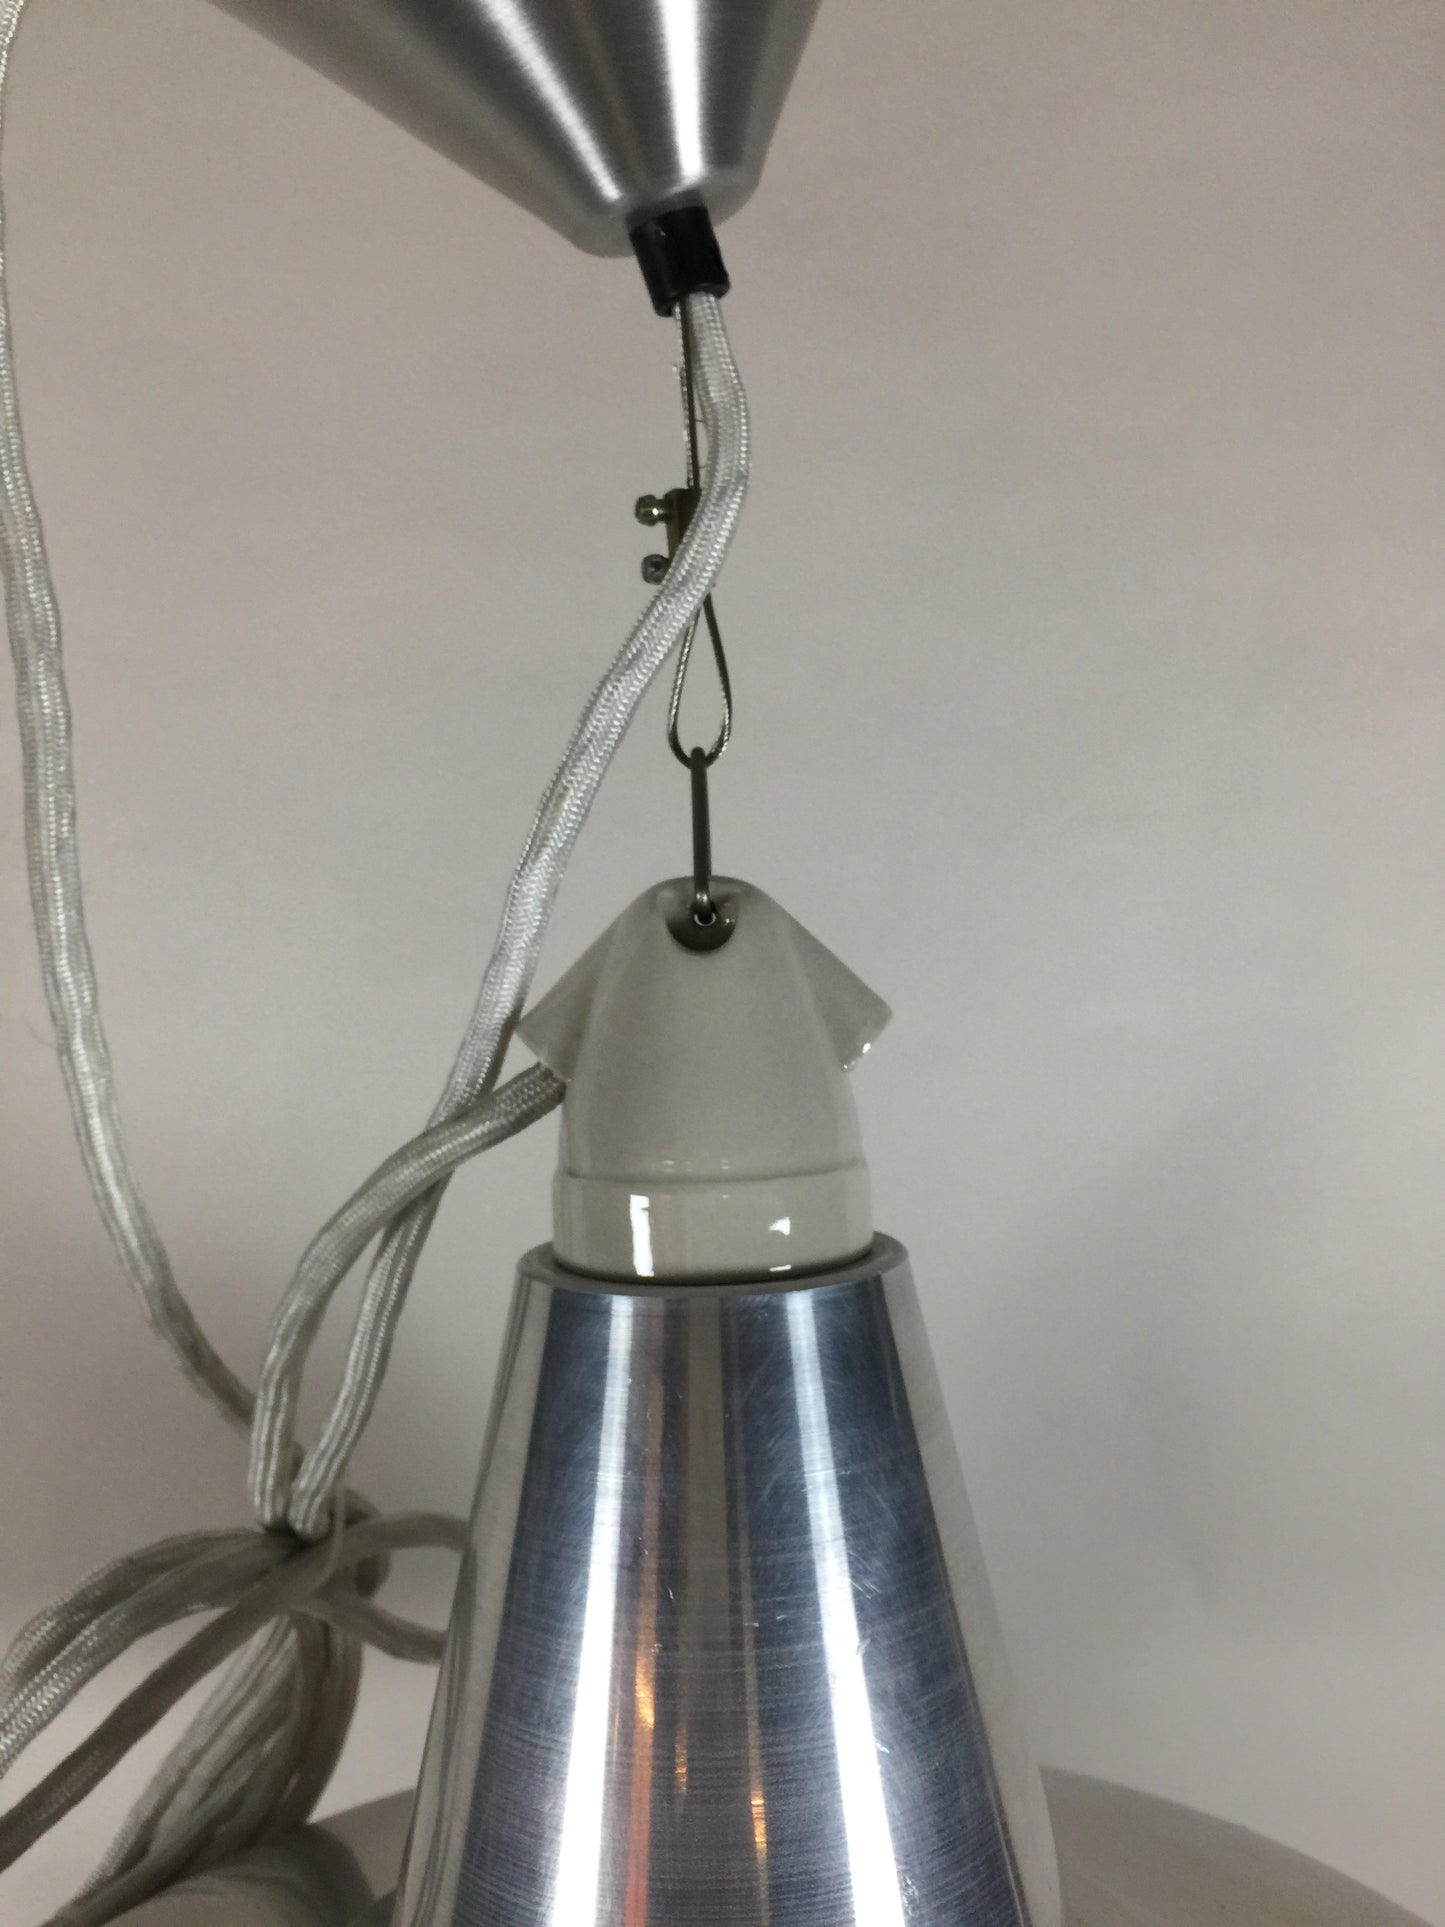 Original BTC lampe - Quay